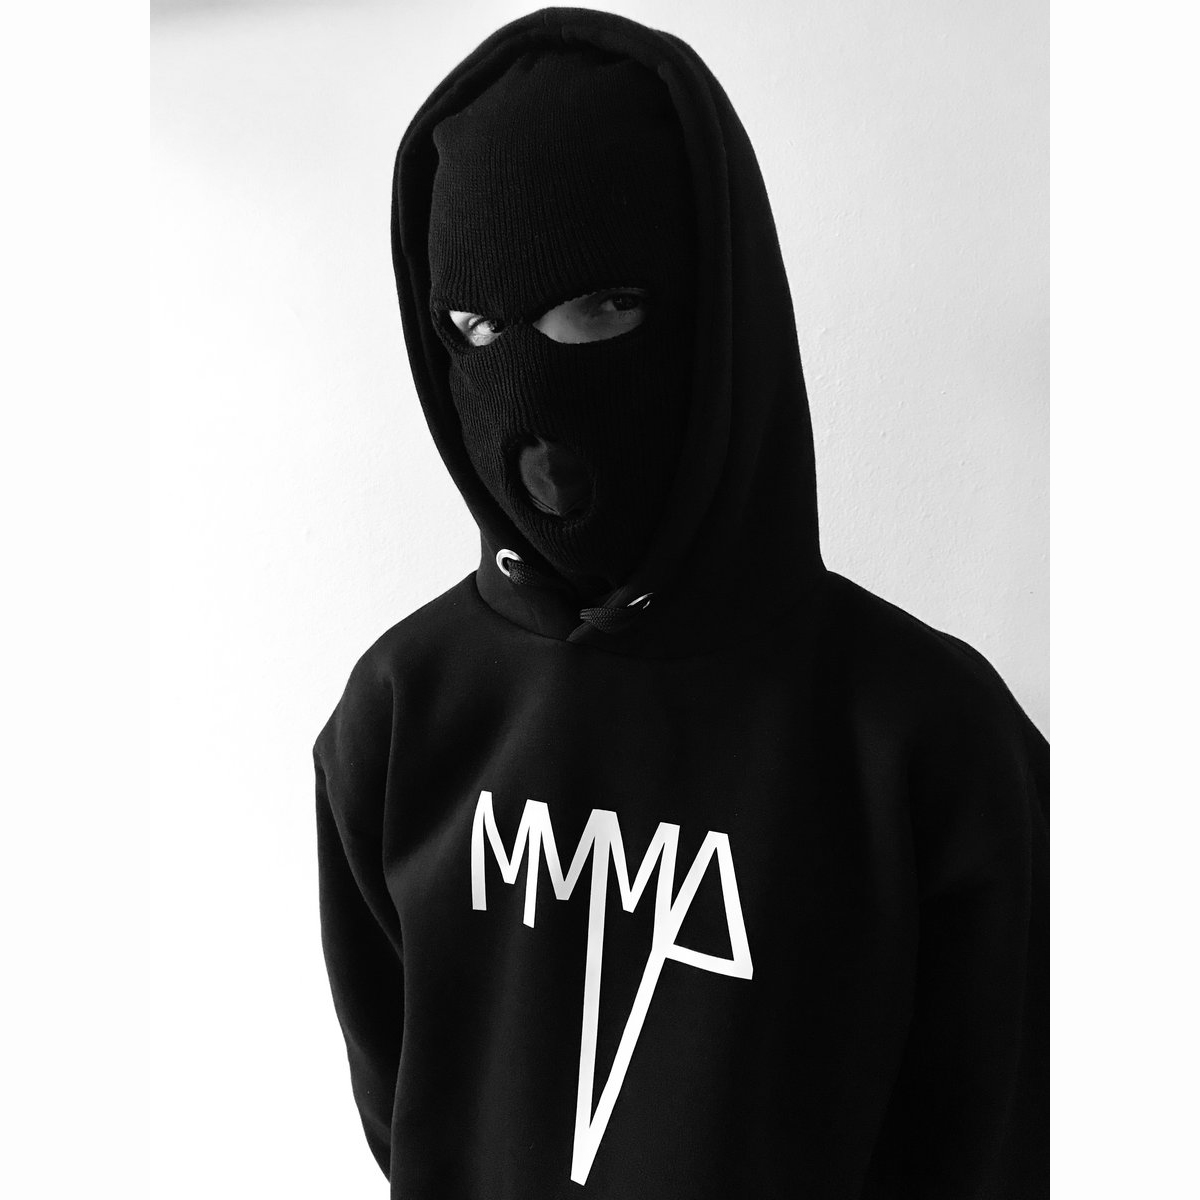 ΜΜΜΔ hoodie (white logo)